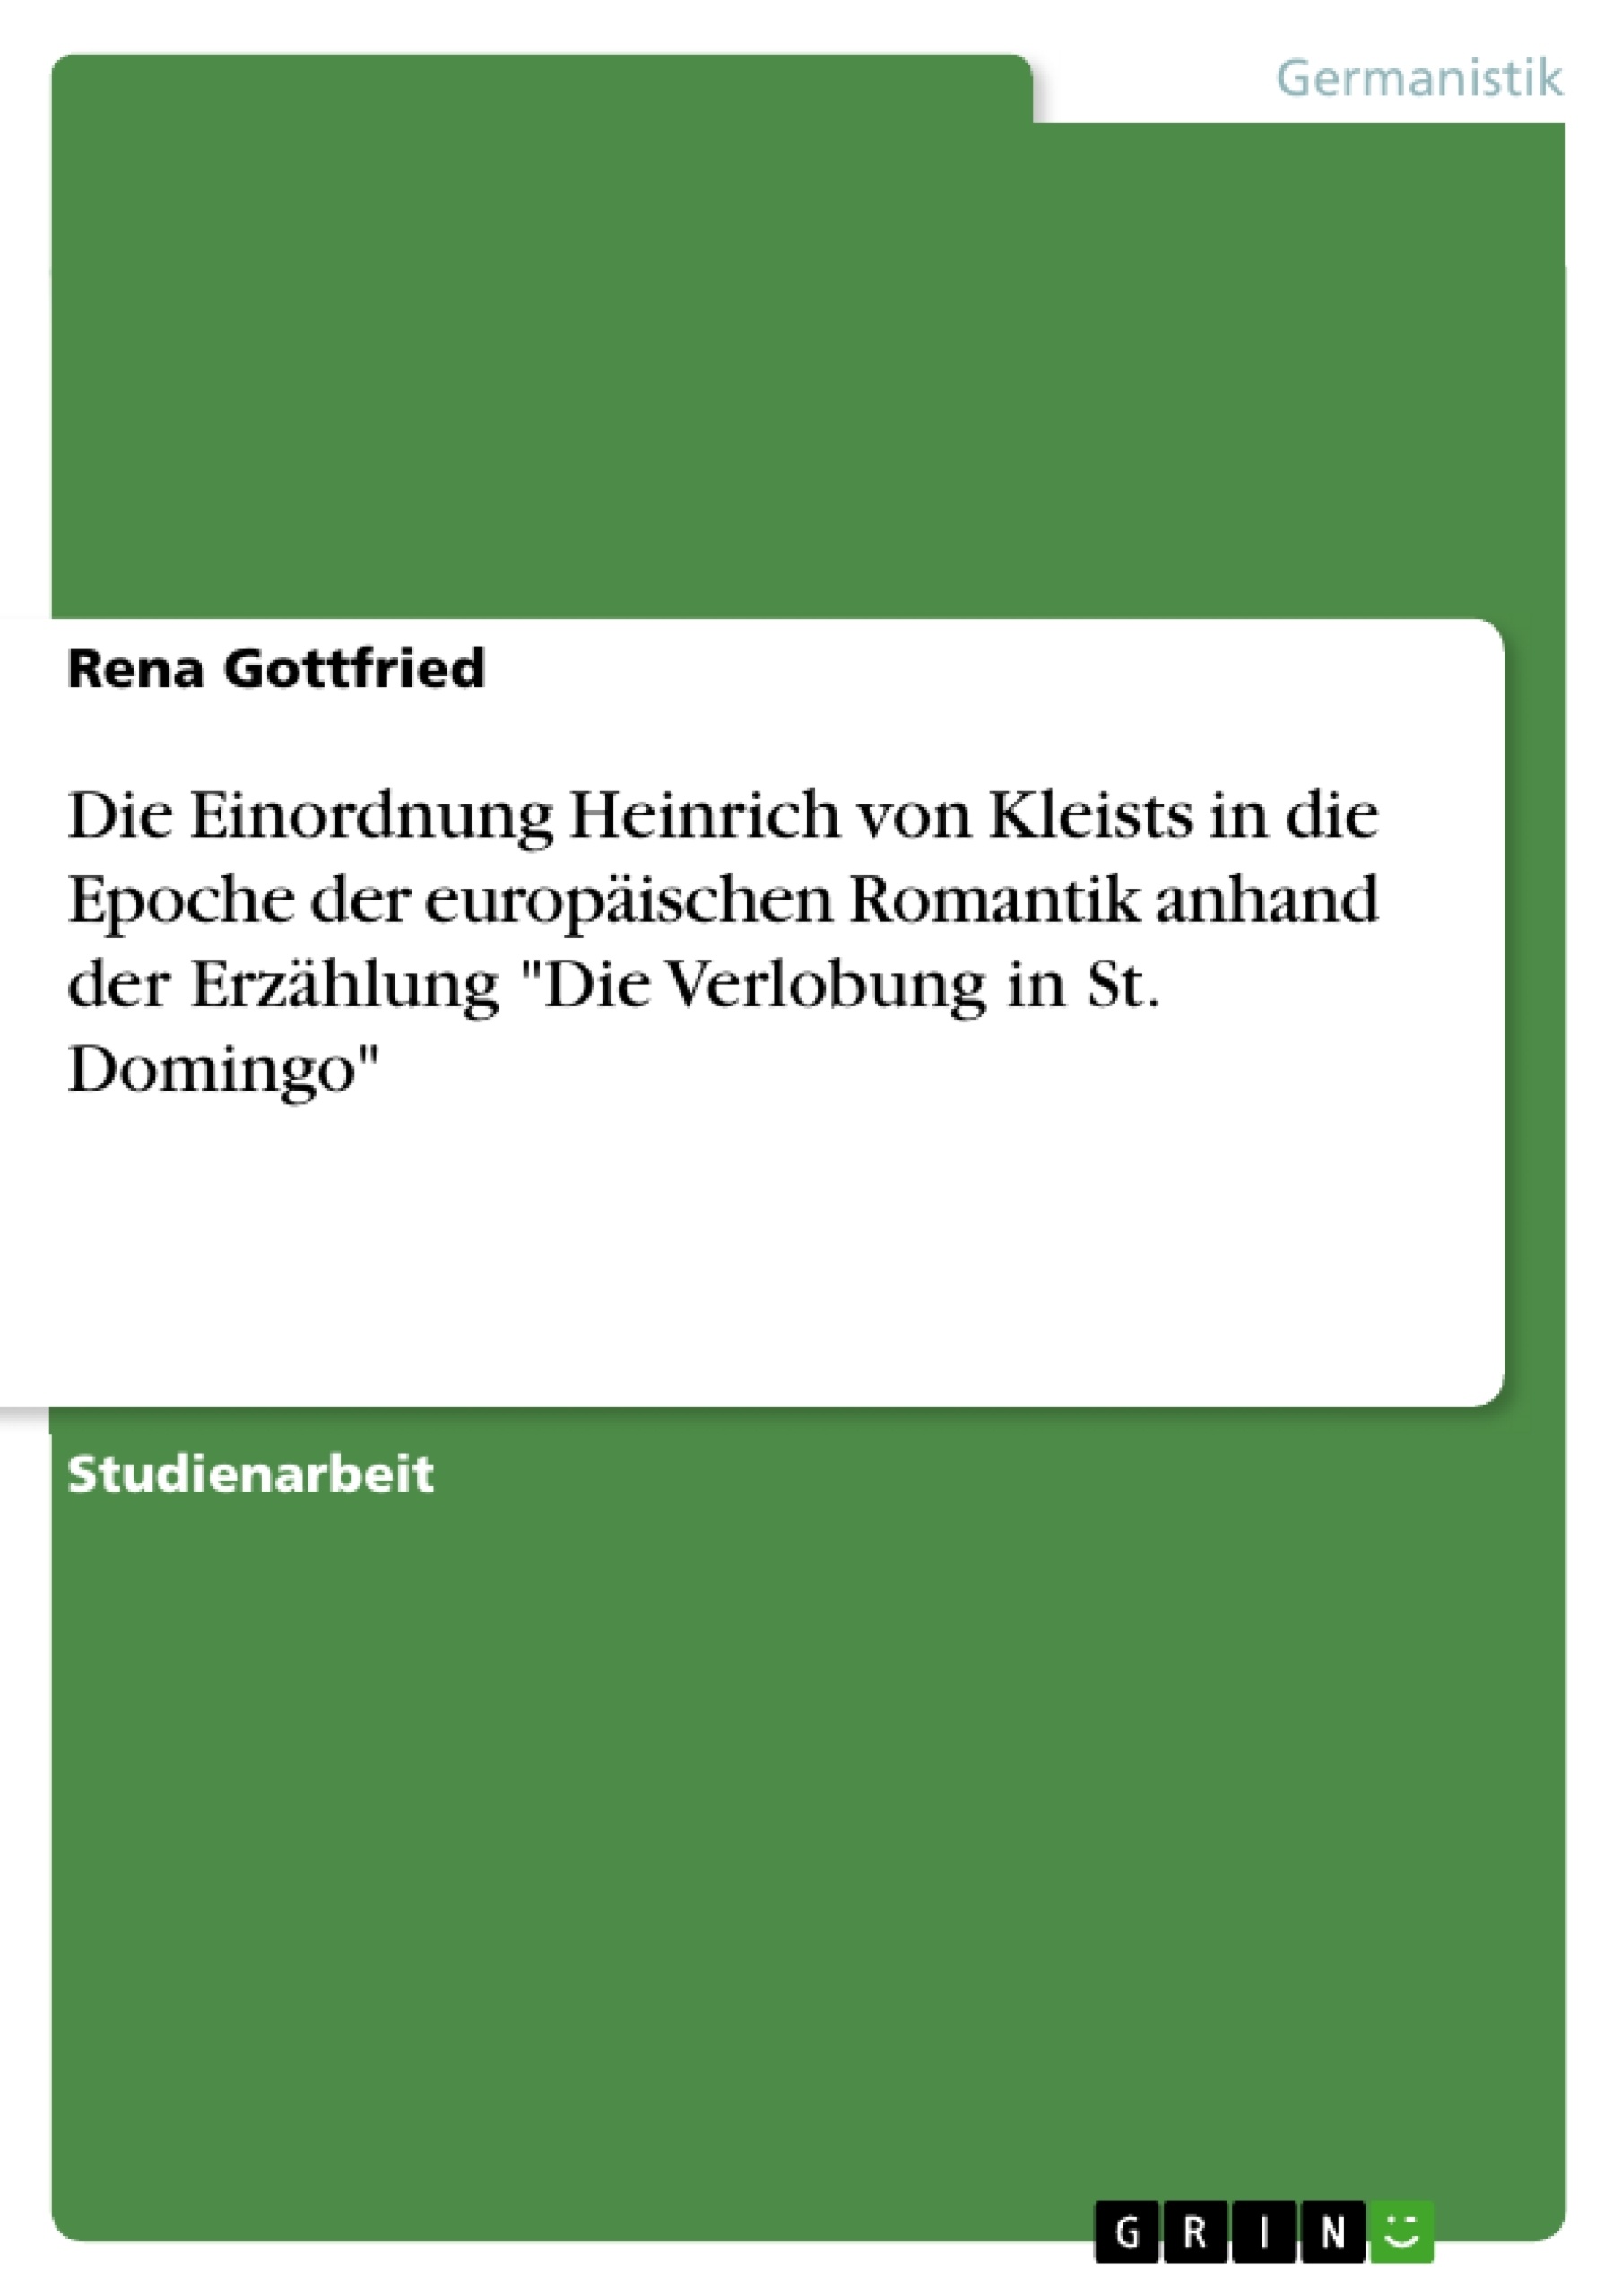 Titre: Die Einordnung Heinrich von Kleists in die Epoche der europäischen Romantik anhand der Erzählung "Die Verlobung in St. Domingo"